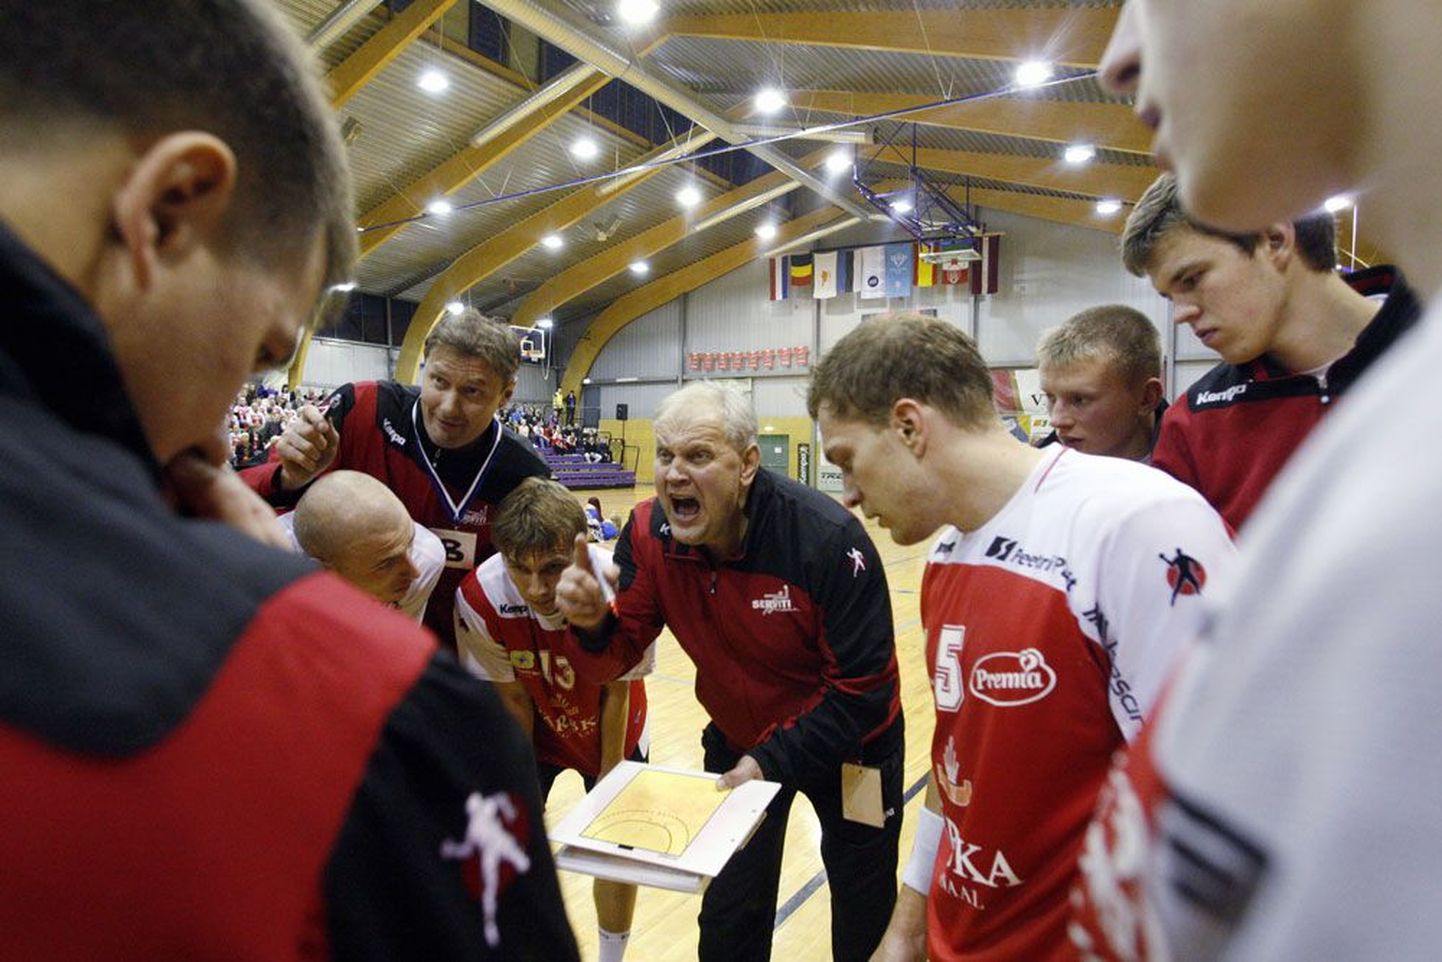 Põlva Serviti käsipallimeeskonna peatreener Kalmer Musting (keskel) meeskonda juhendamas.